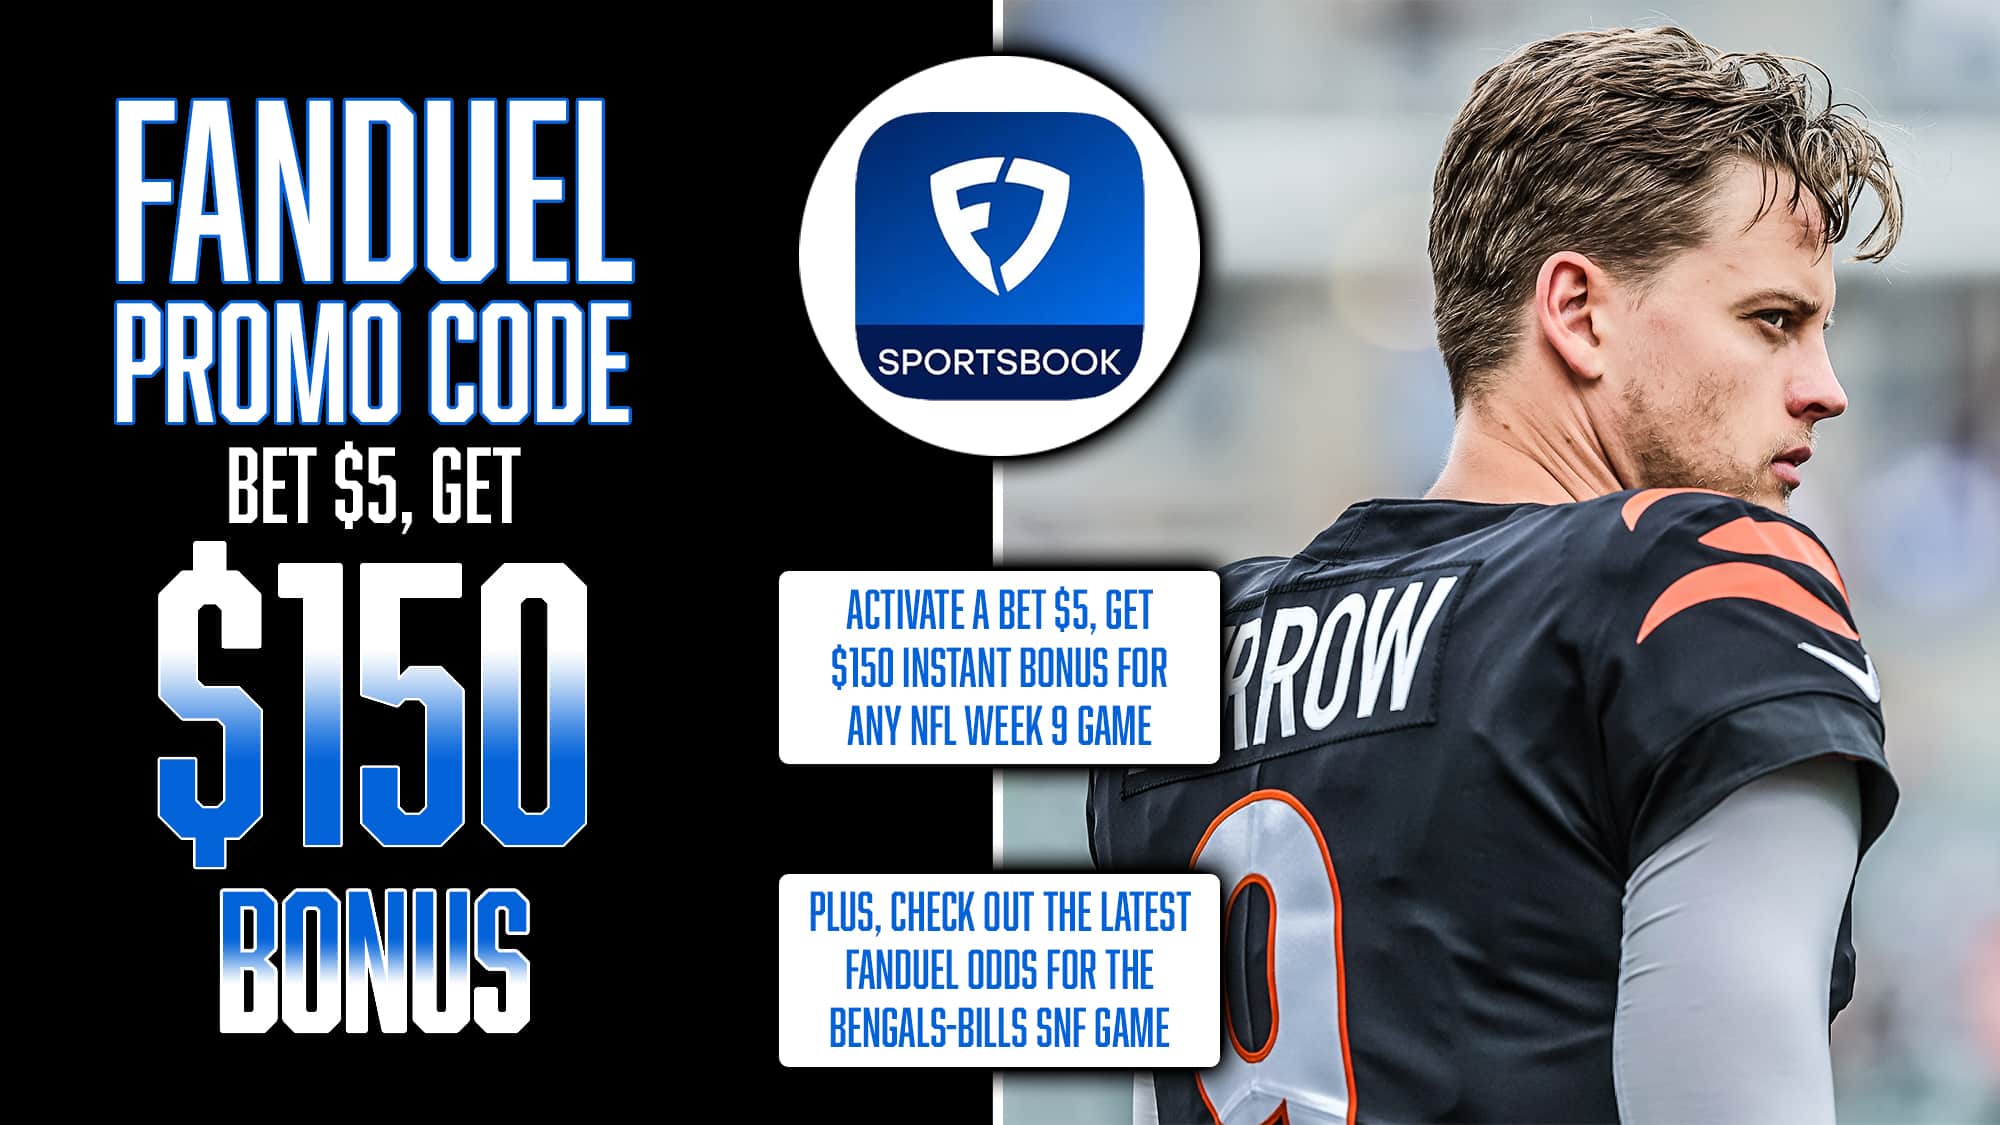 FanDuel Promo Code NFL, Get $150 Instant Bonus, NFL Week 9, Bengals-Bills